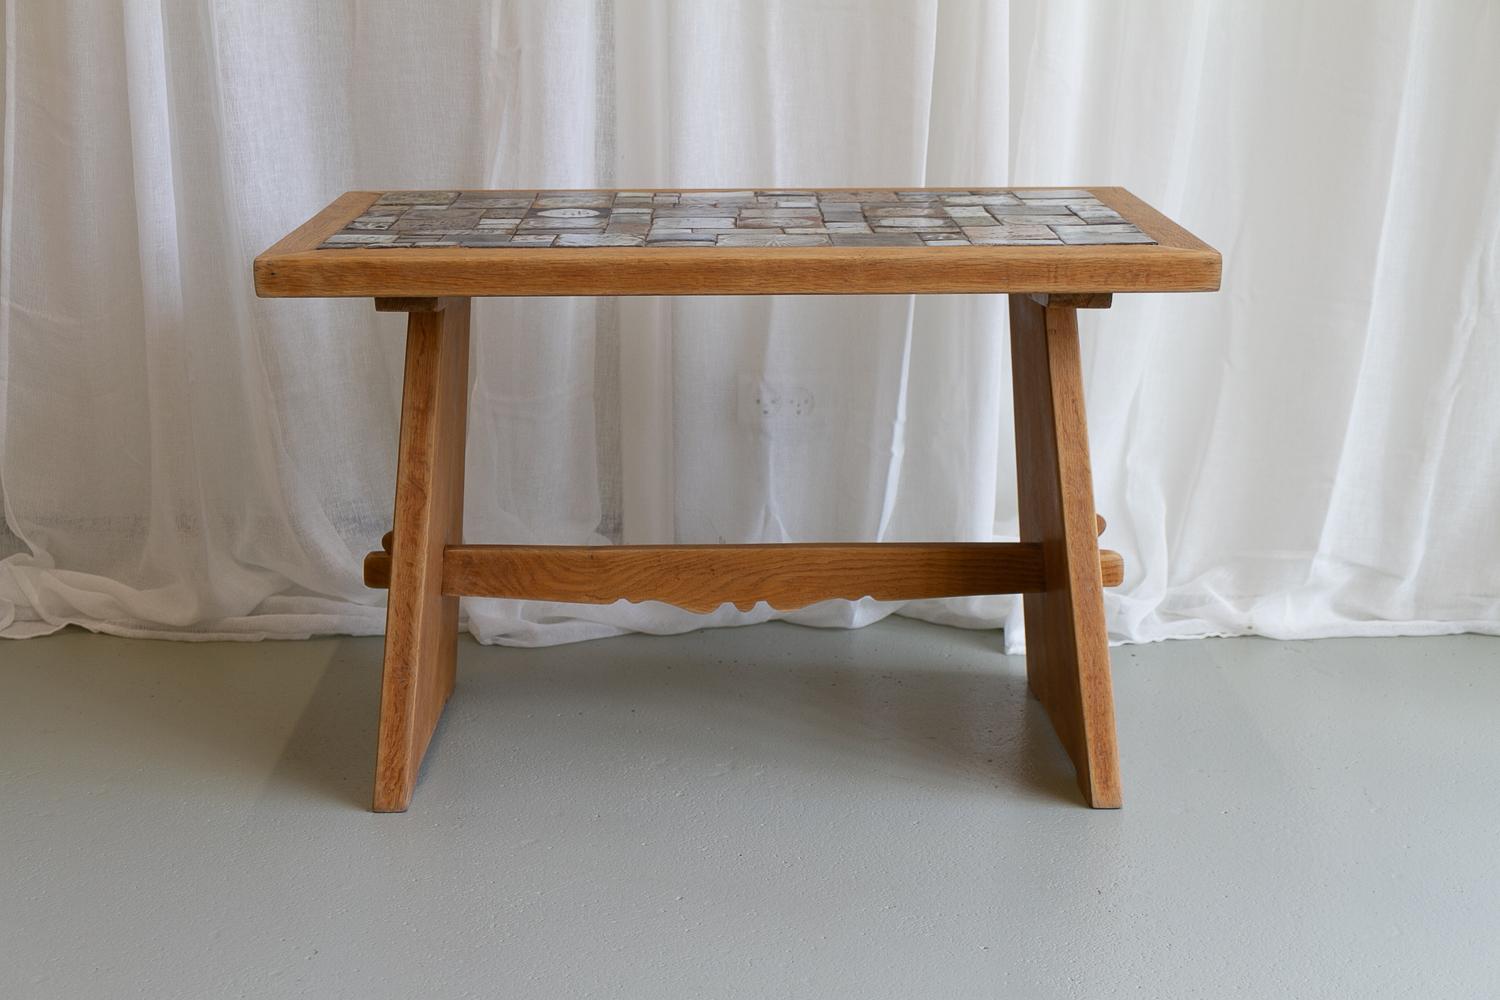 Table basse danoise attribuée à Tue Poulsen, années 1960
Table basse ou table d'appoint danoise de style brutal. Cadre en chêne nordique. Les carreaux de céramique sont fabriqués individuellement à la main en différentes tailles, motifs et